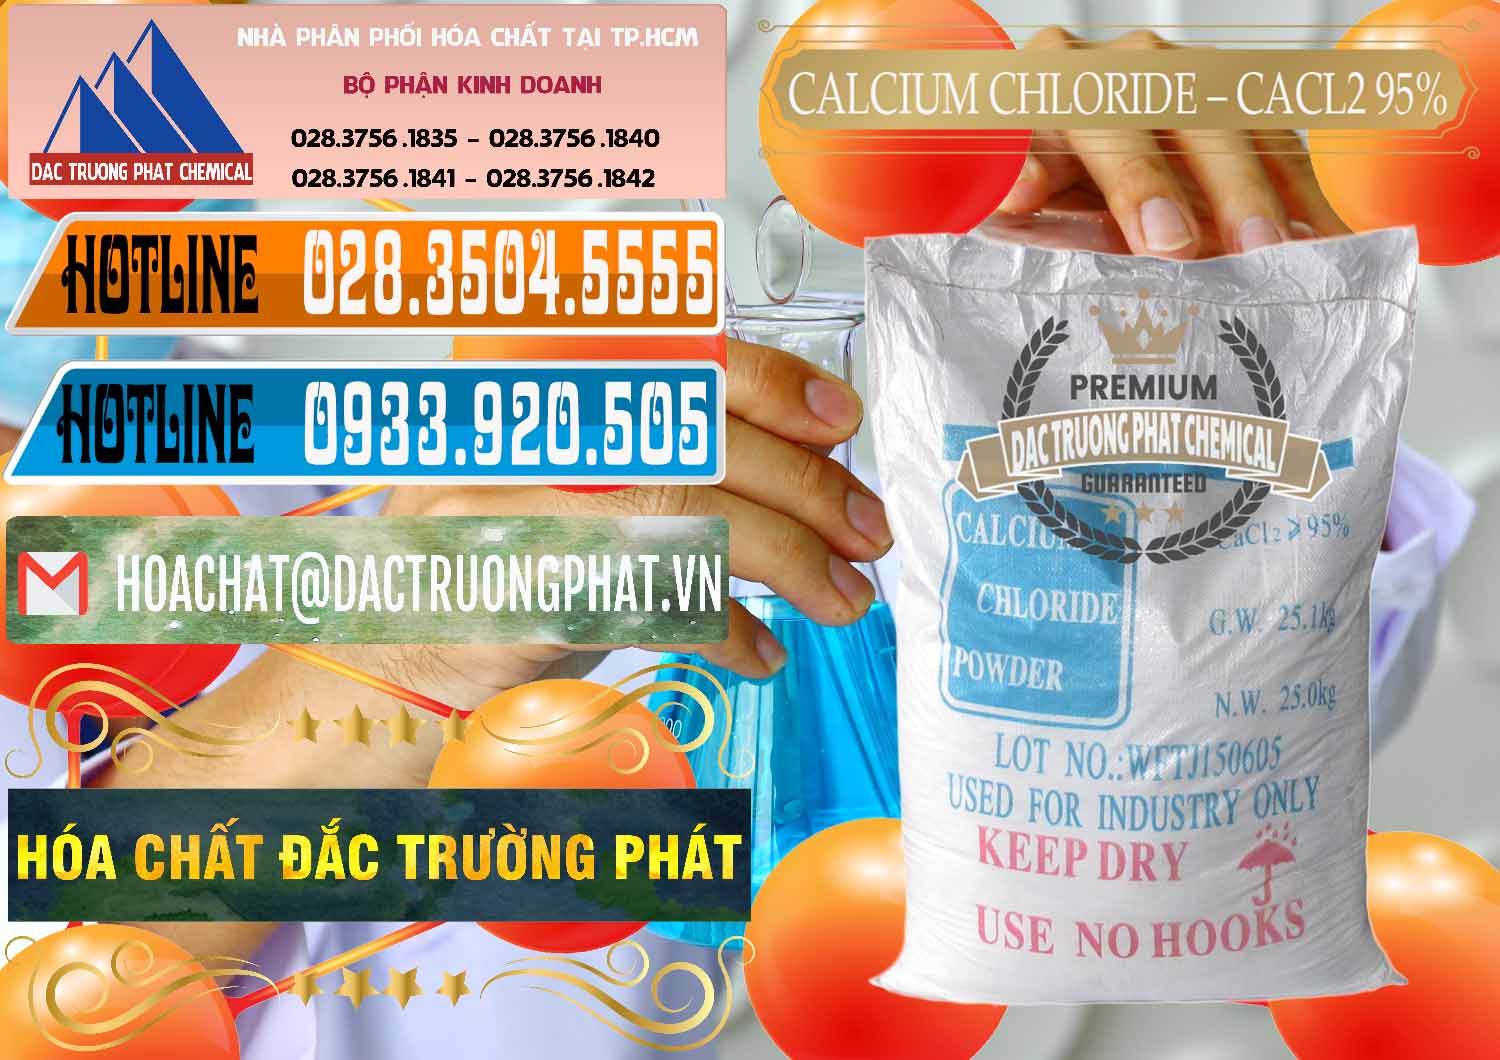 Cty chuyên bán - cung ứng CaCl2 – Canxi Clorua 95% Trung Quốc China - 0039 - Công ty chuyên nhập khẩu & cung cấp hóa chất tại TP.HCM - stmp.net